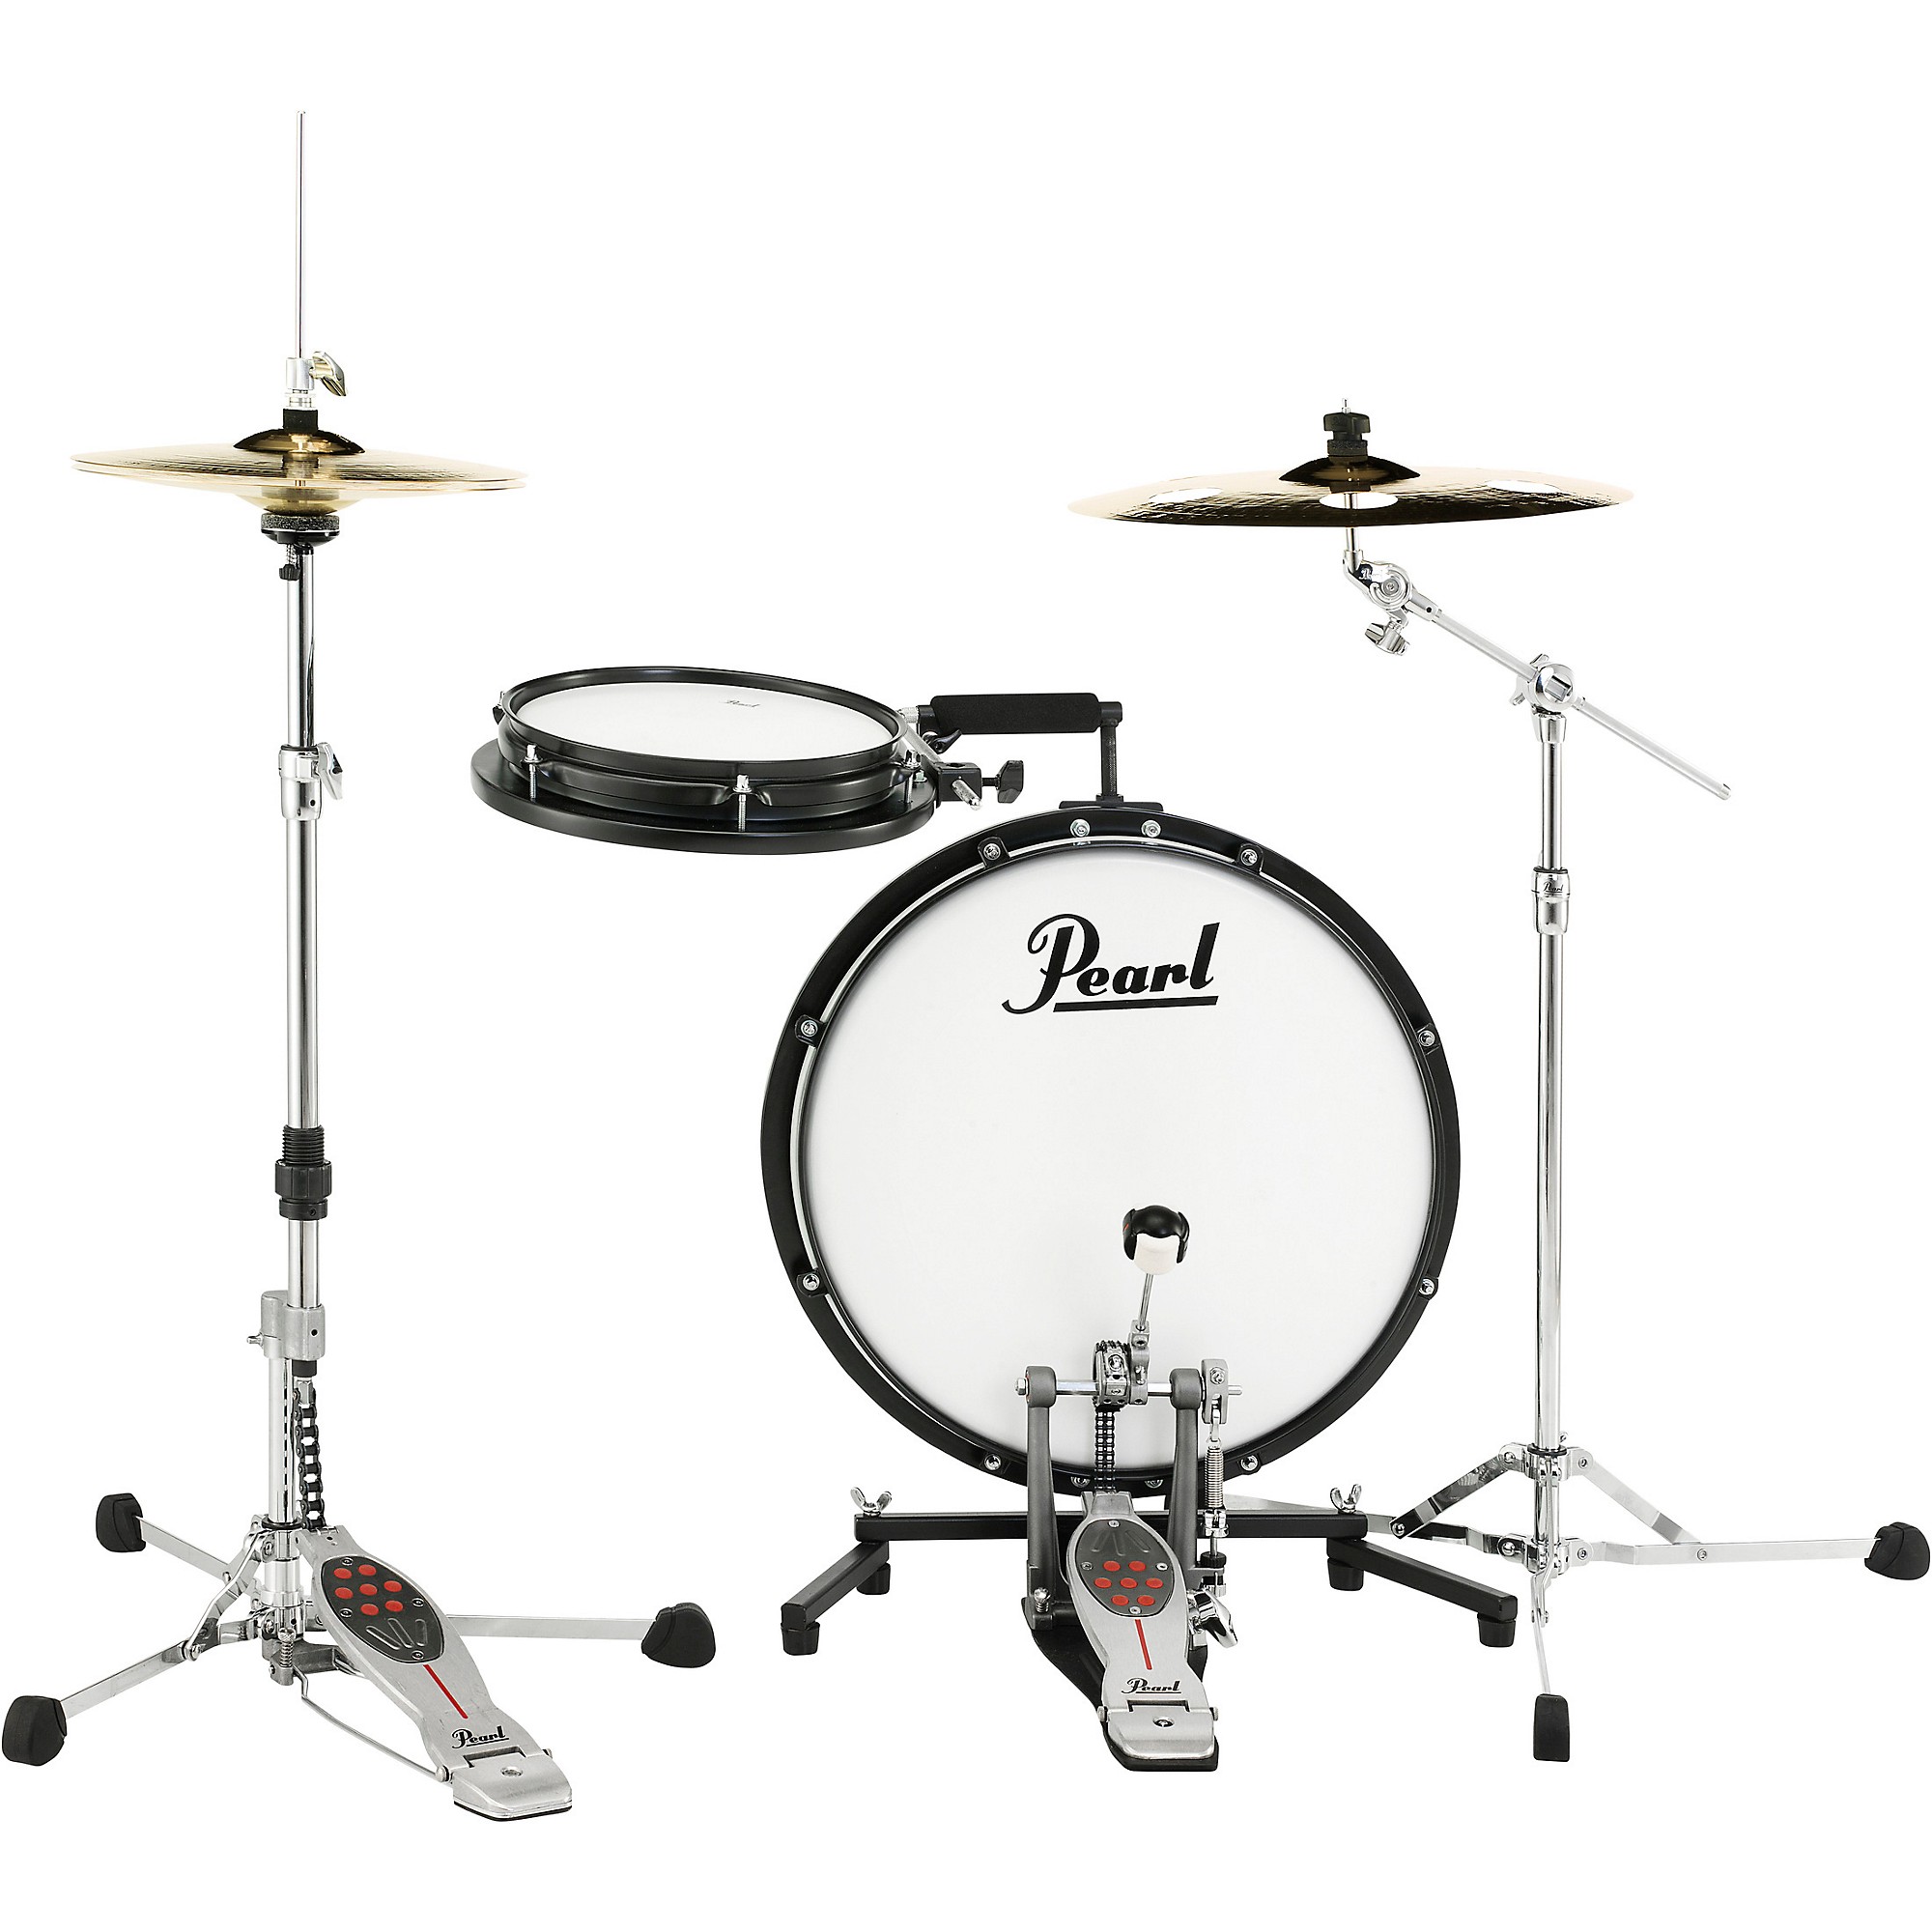 RGM311 Pearl Miniature Drum kit 